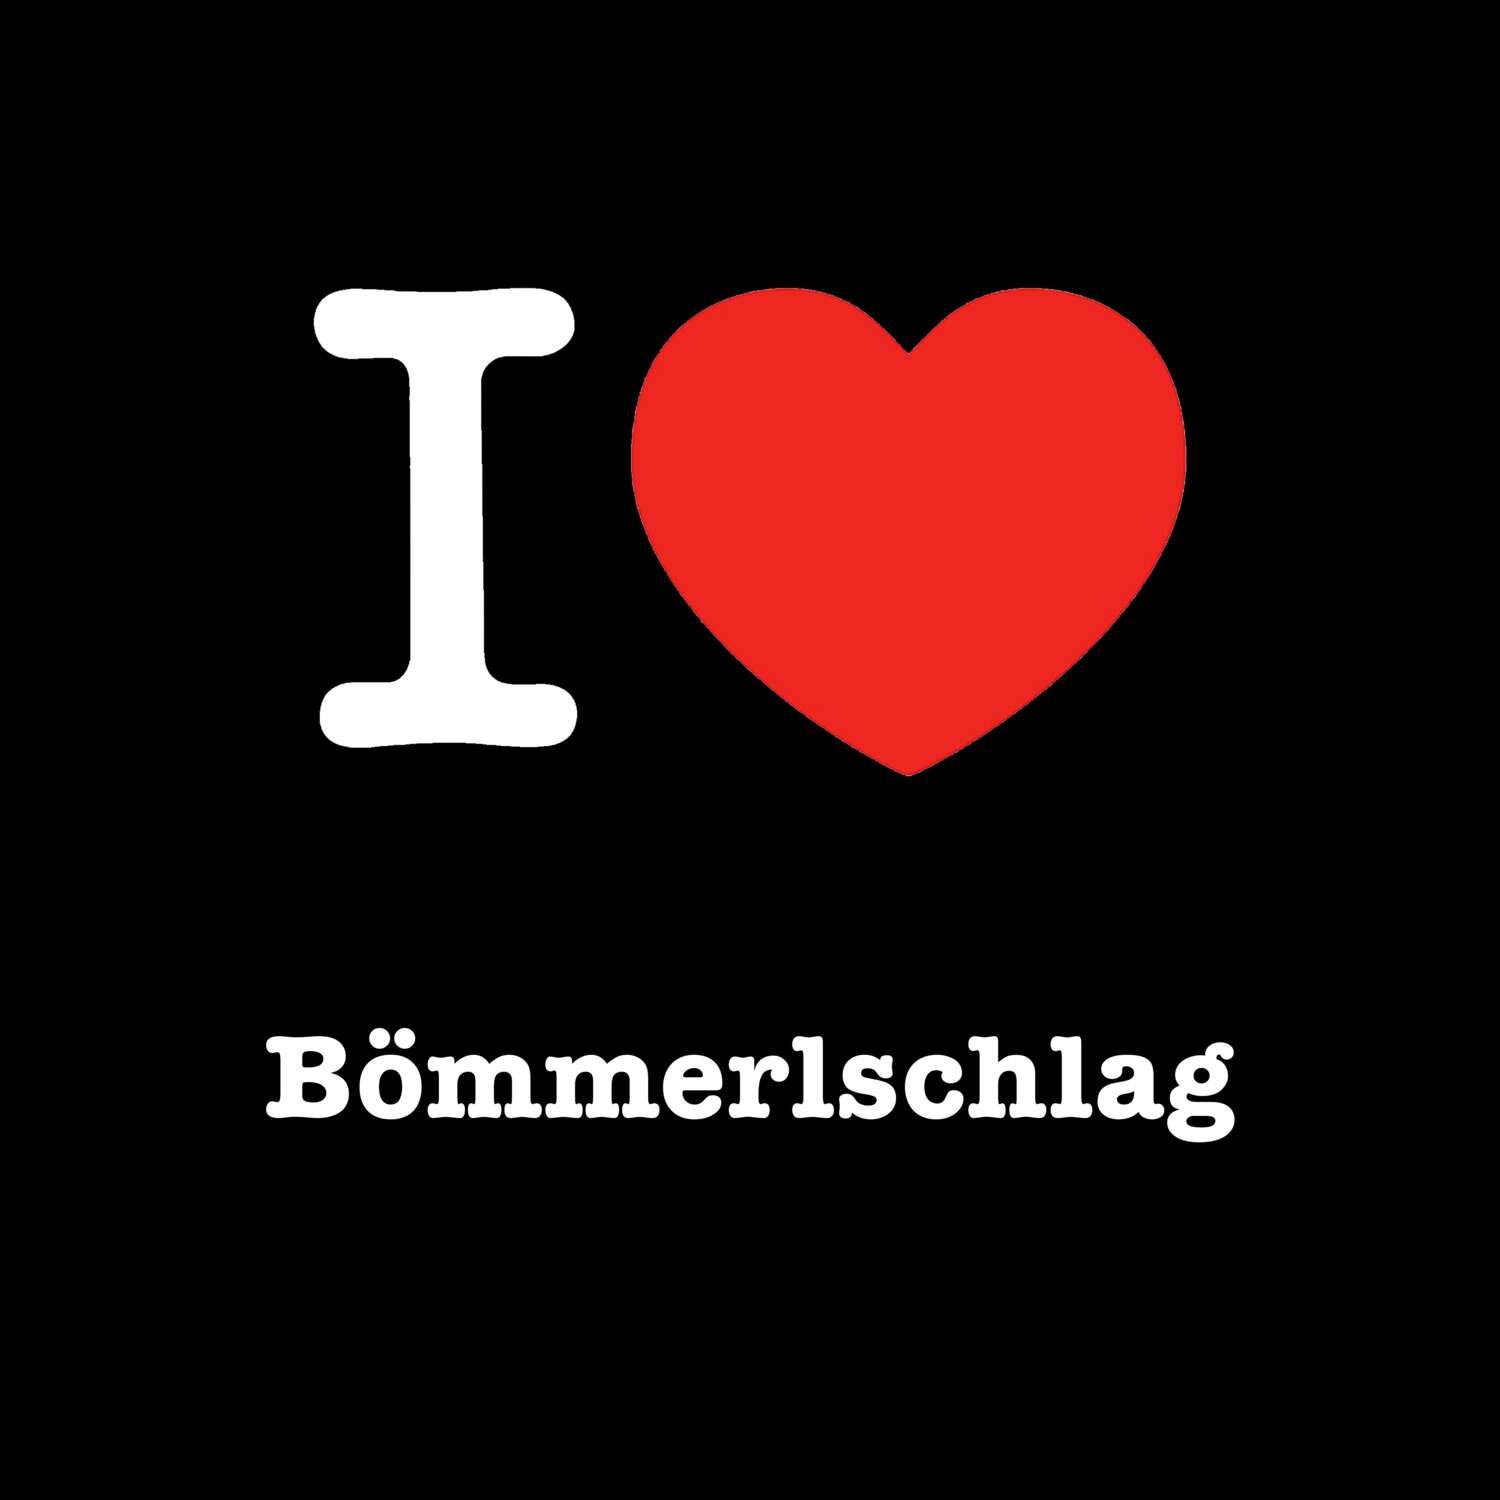 Bömmerlschlag T-Shirt »I love«